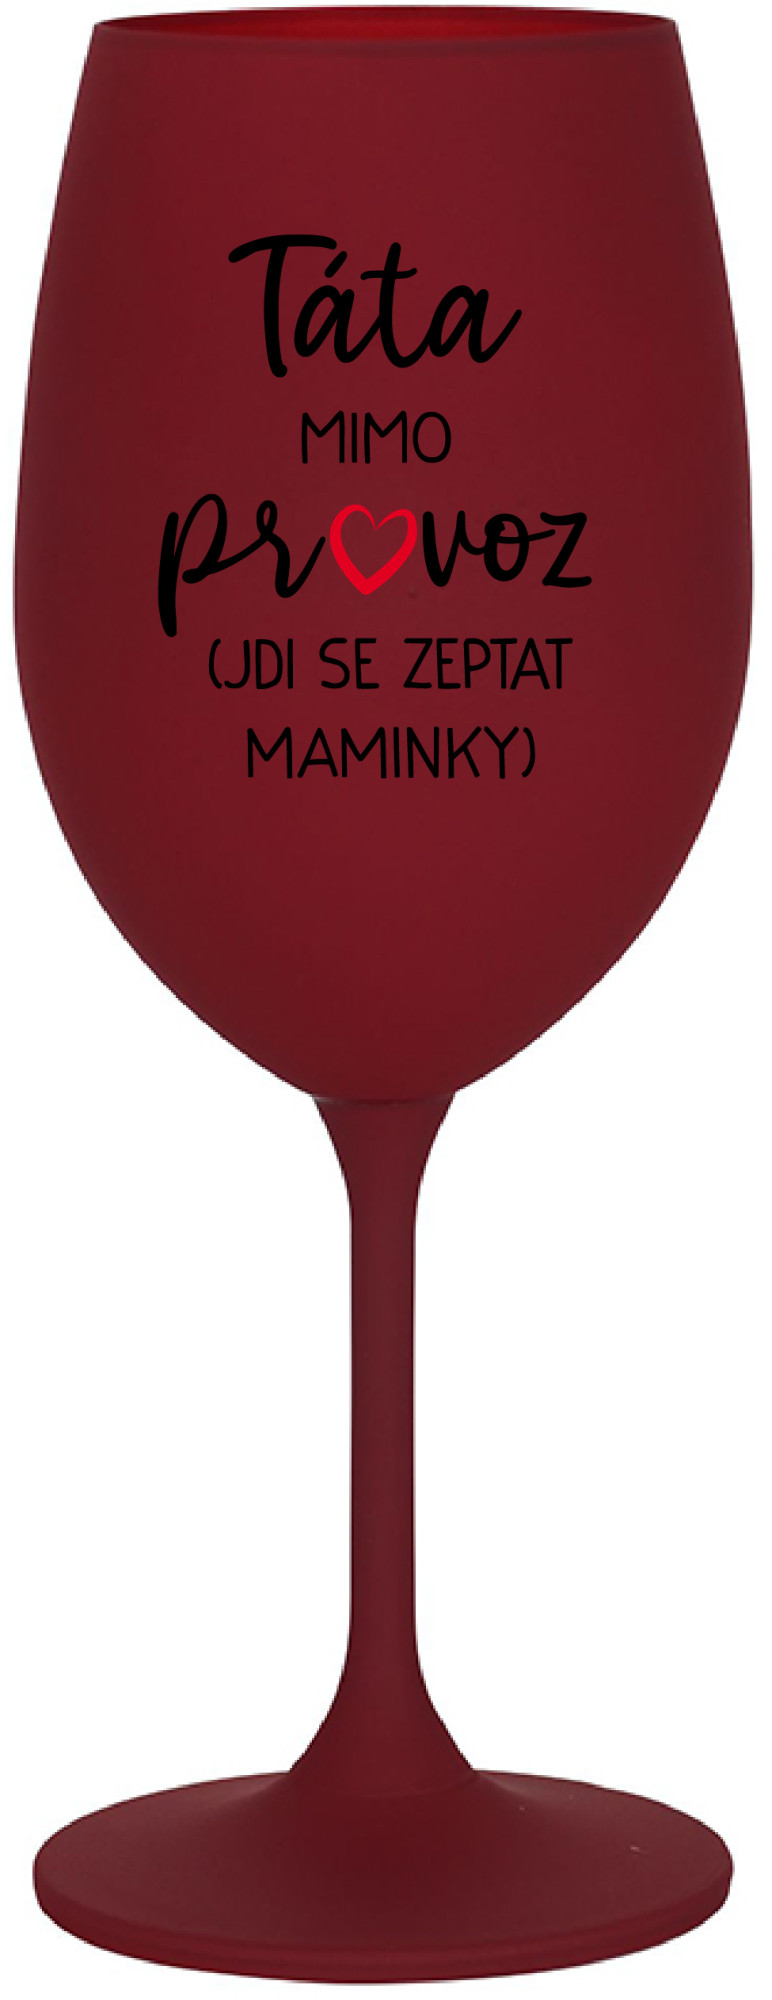 TÁTA MIMO PROVOZ (JDI SE ZEPTAT MAMINKY) - bordo sklenice na víno 350 ml